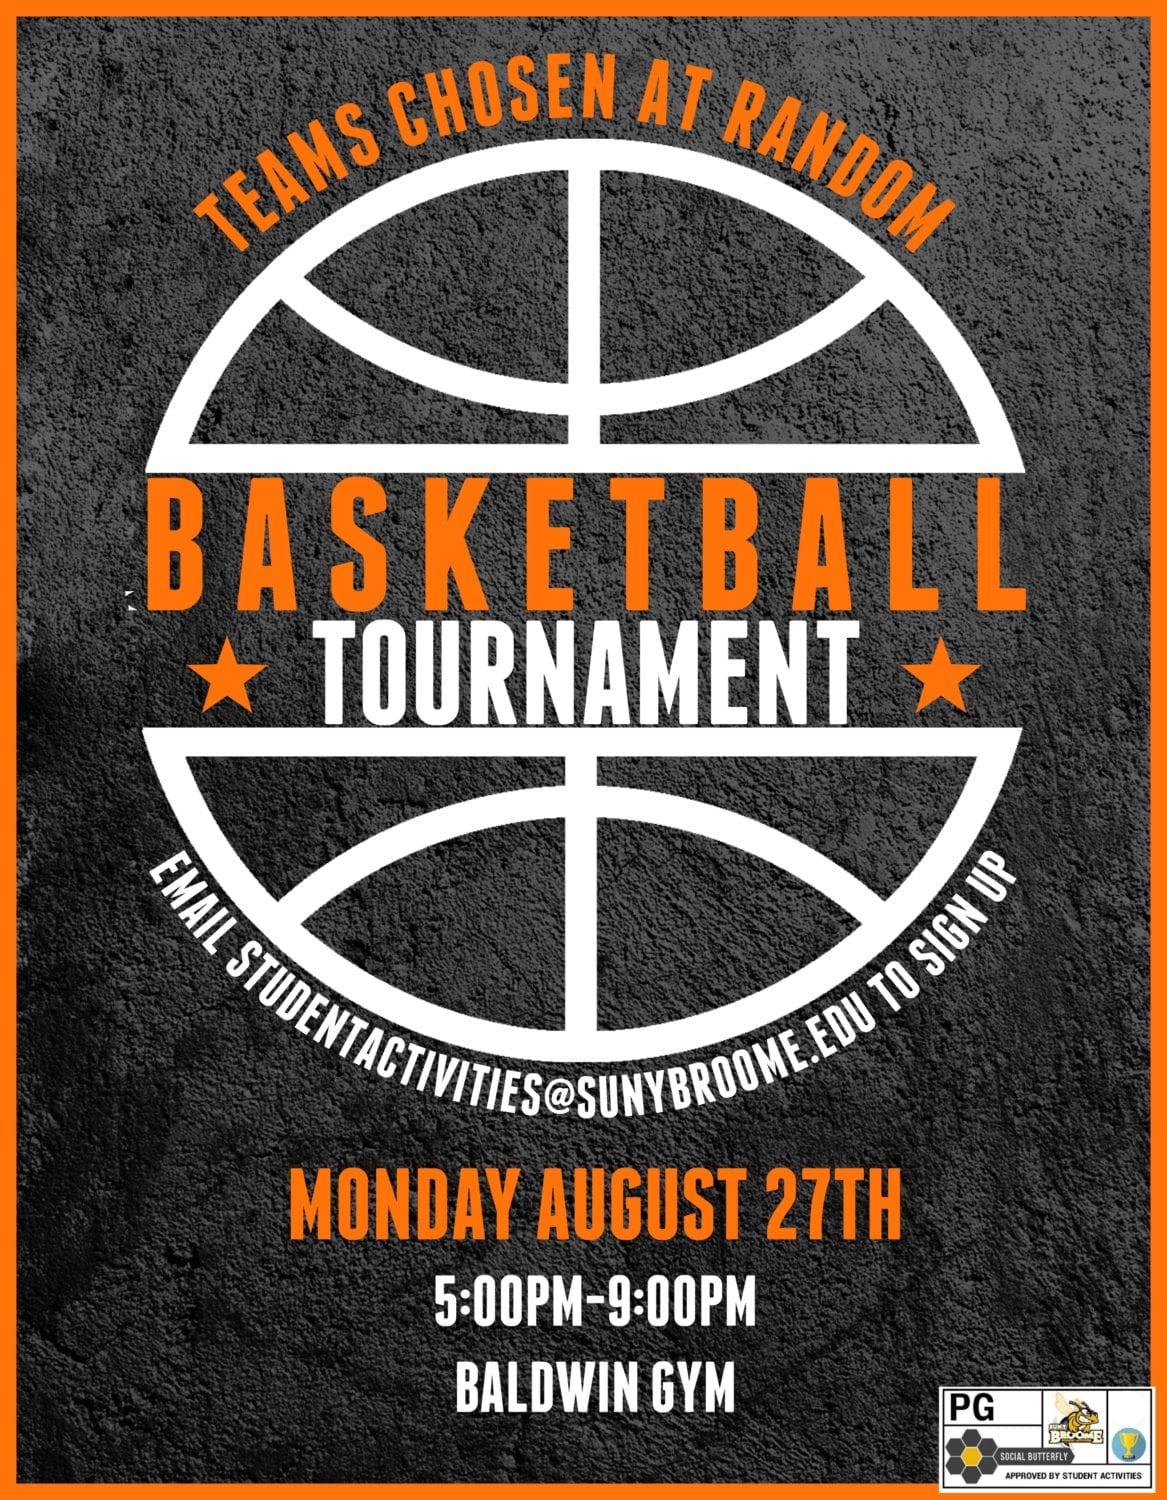 Game time: Basketball tournament on Aug. 27